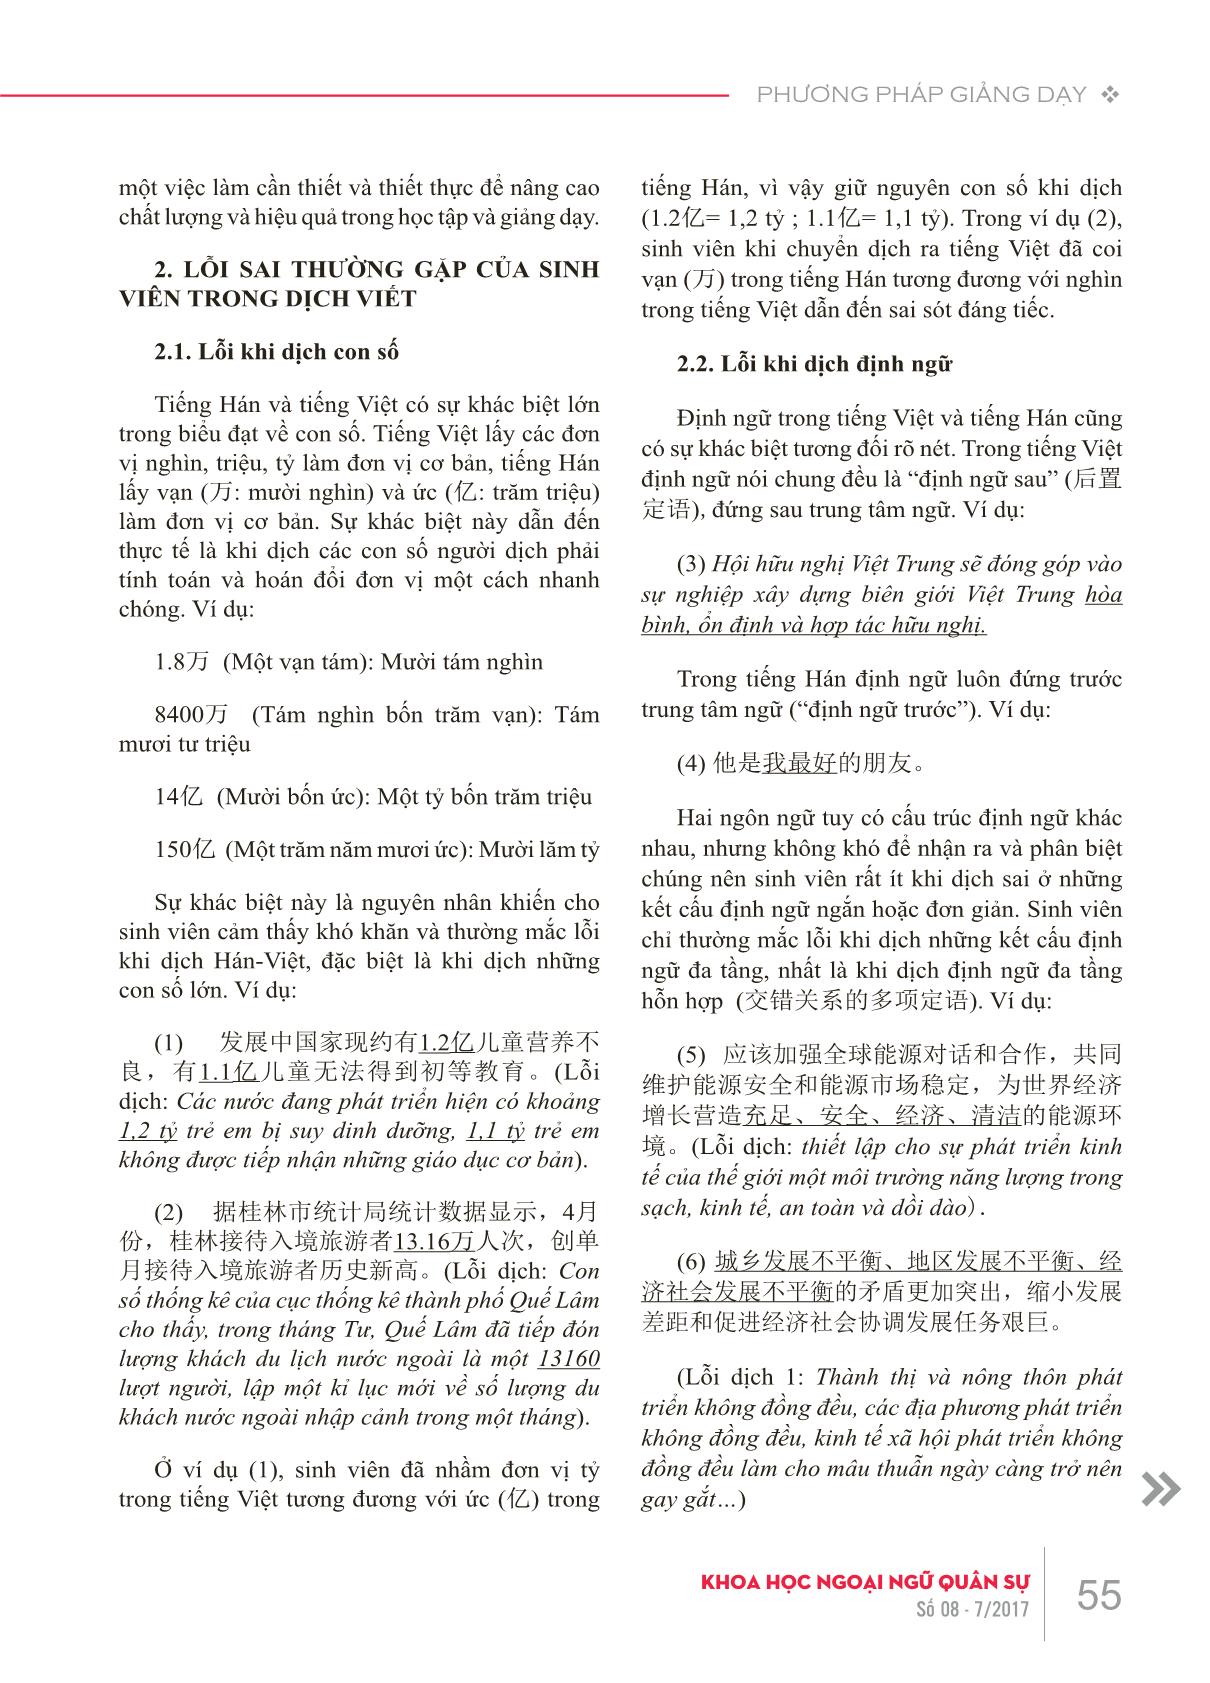 Những lỗi sai thường gặp của sinh viên khi dịch viết Hán-Việt do hạn chế về kiến thức ngôn ngữ và giải pháp trong giảng dạy trang 2